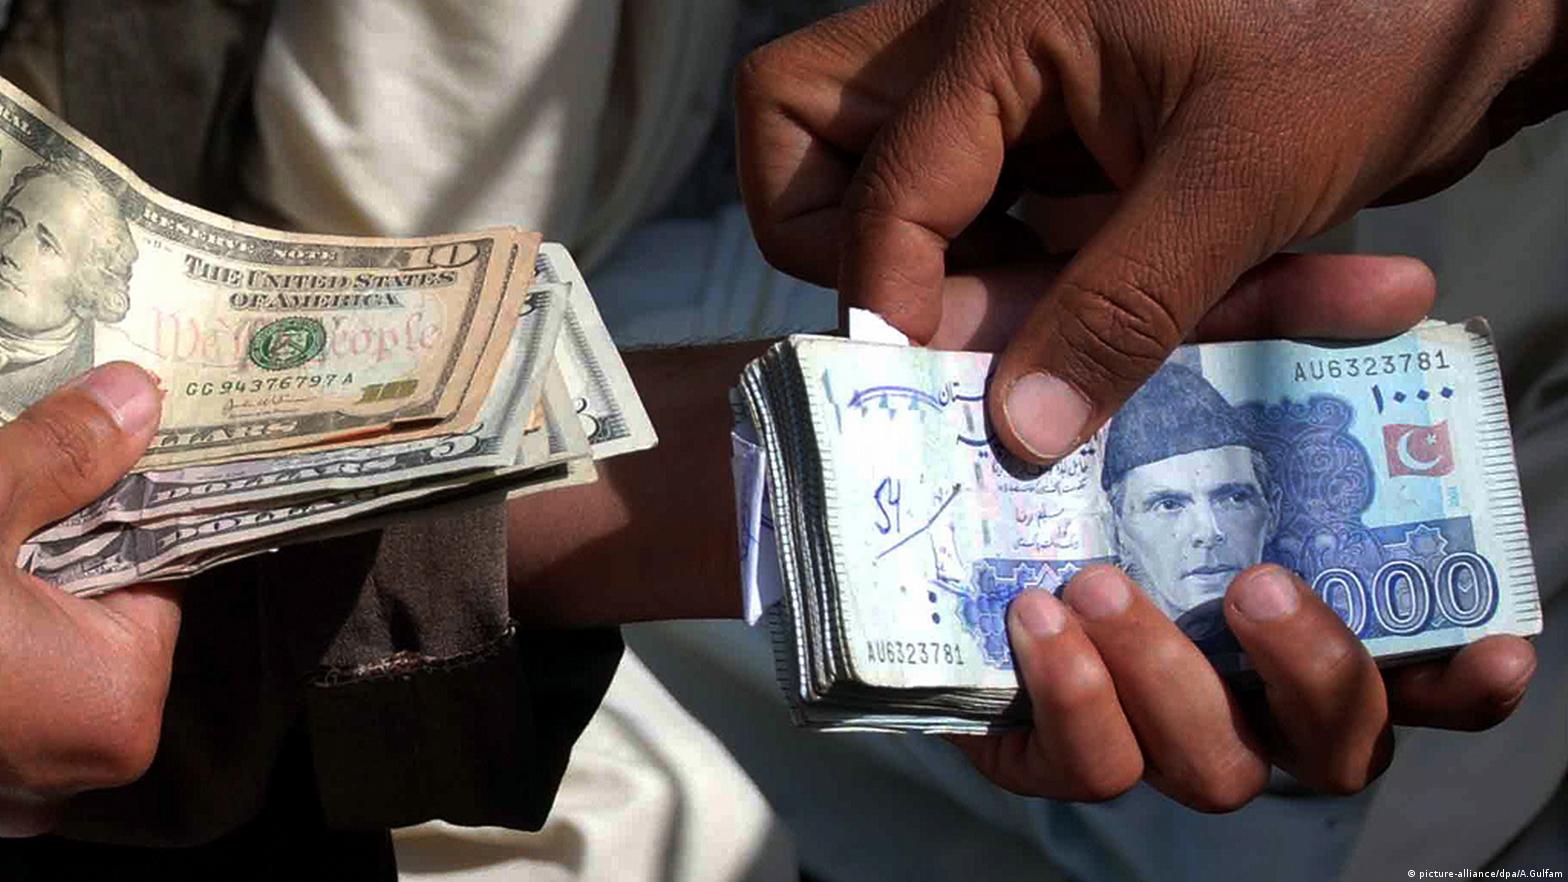 TT Payment In Pakistan